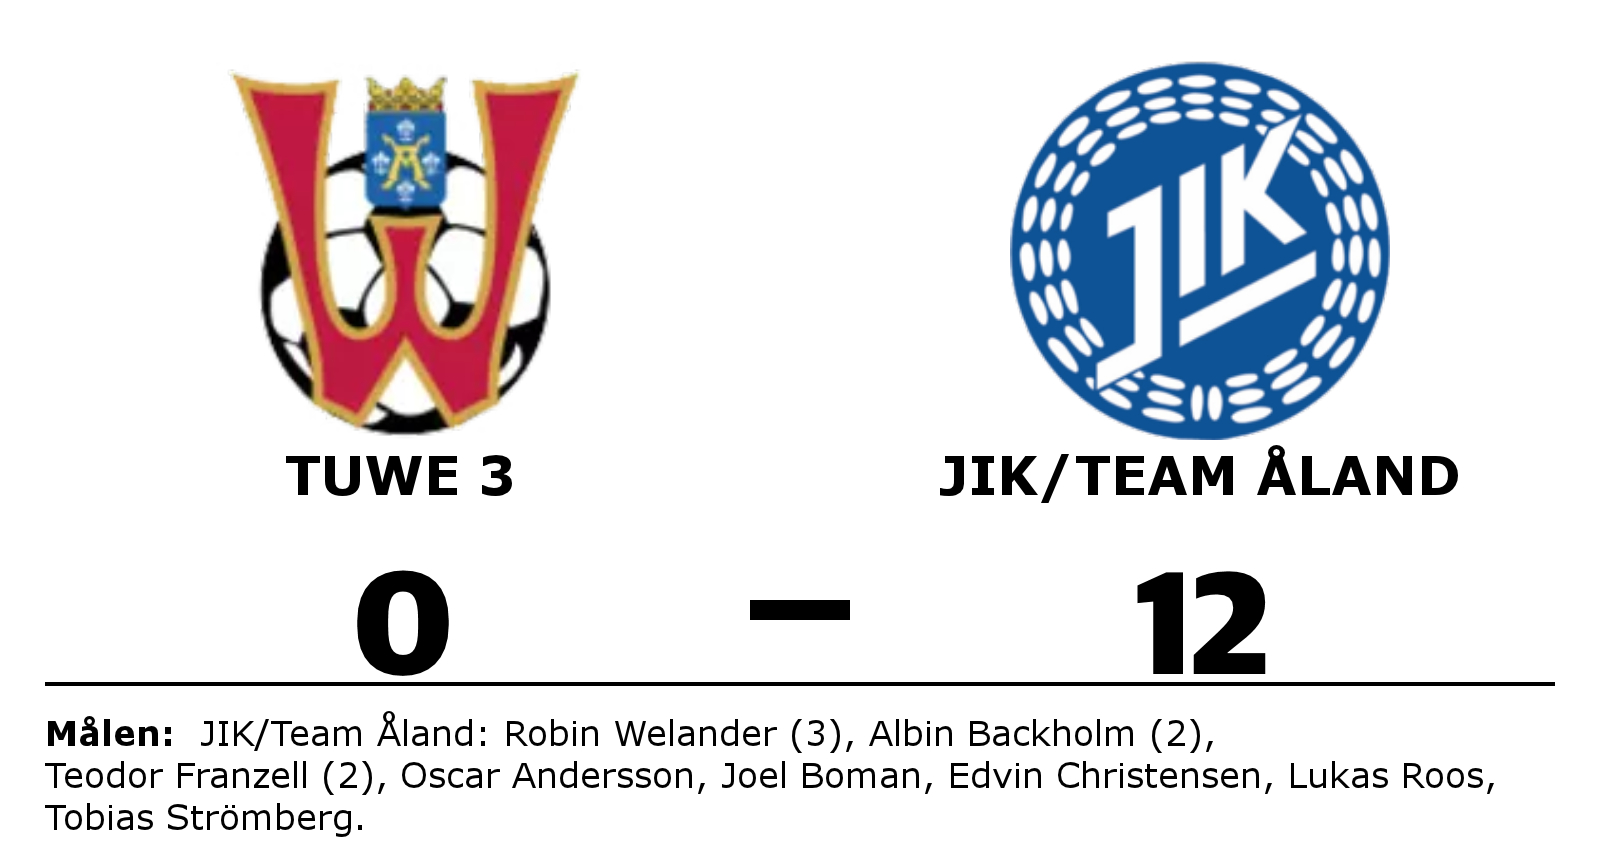 TuWe 3 förlorade mot JIK/Team Åland